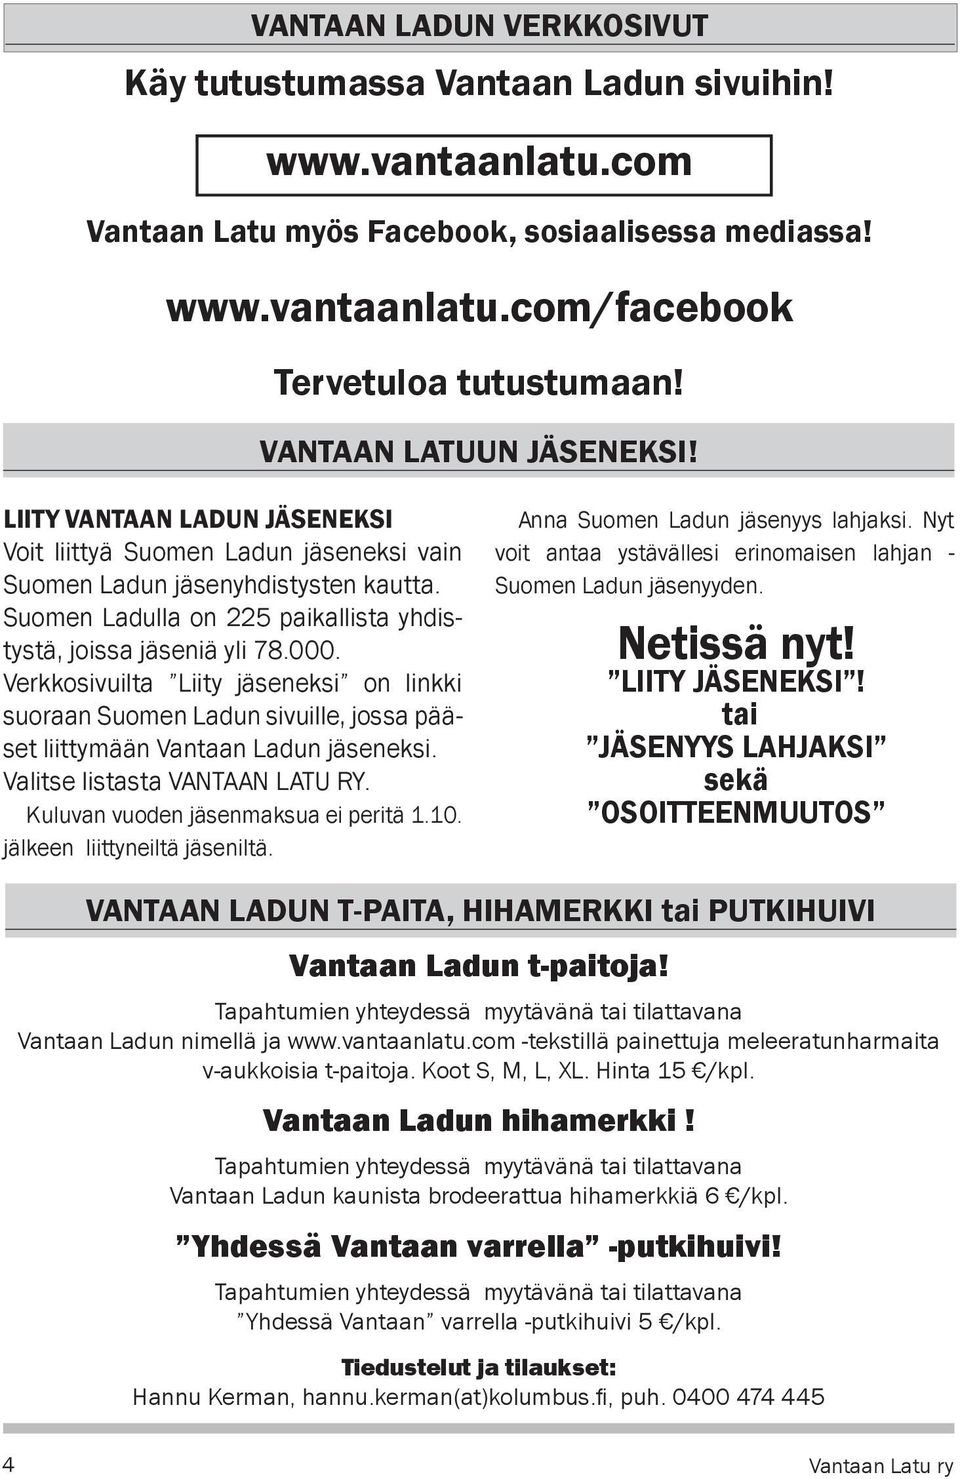 Suomen Ladulla on 225 paikallista yhdistystä, joissa jäseniä yli 78.000. Verkkosivuilta Liity jäseneksi on linkki suoraan Suomen Ladun sivuille, jossa pääset liittymään Vantaan Ladun jäseneksi.